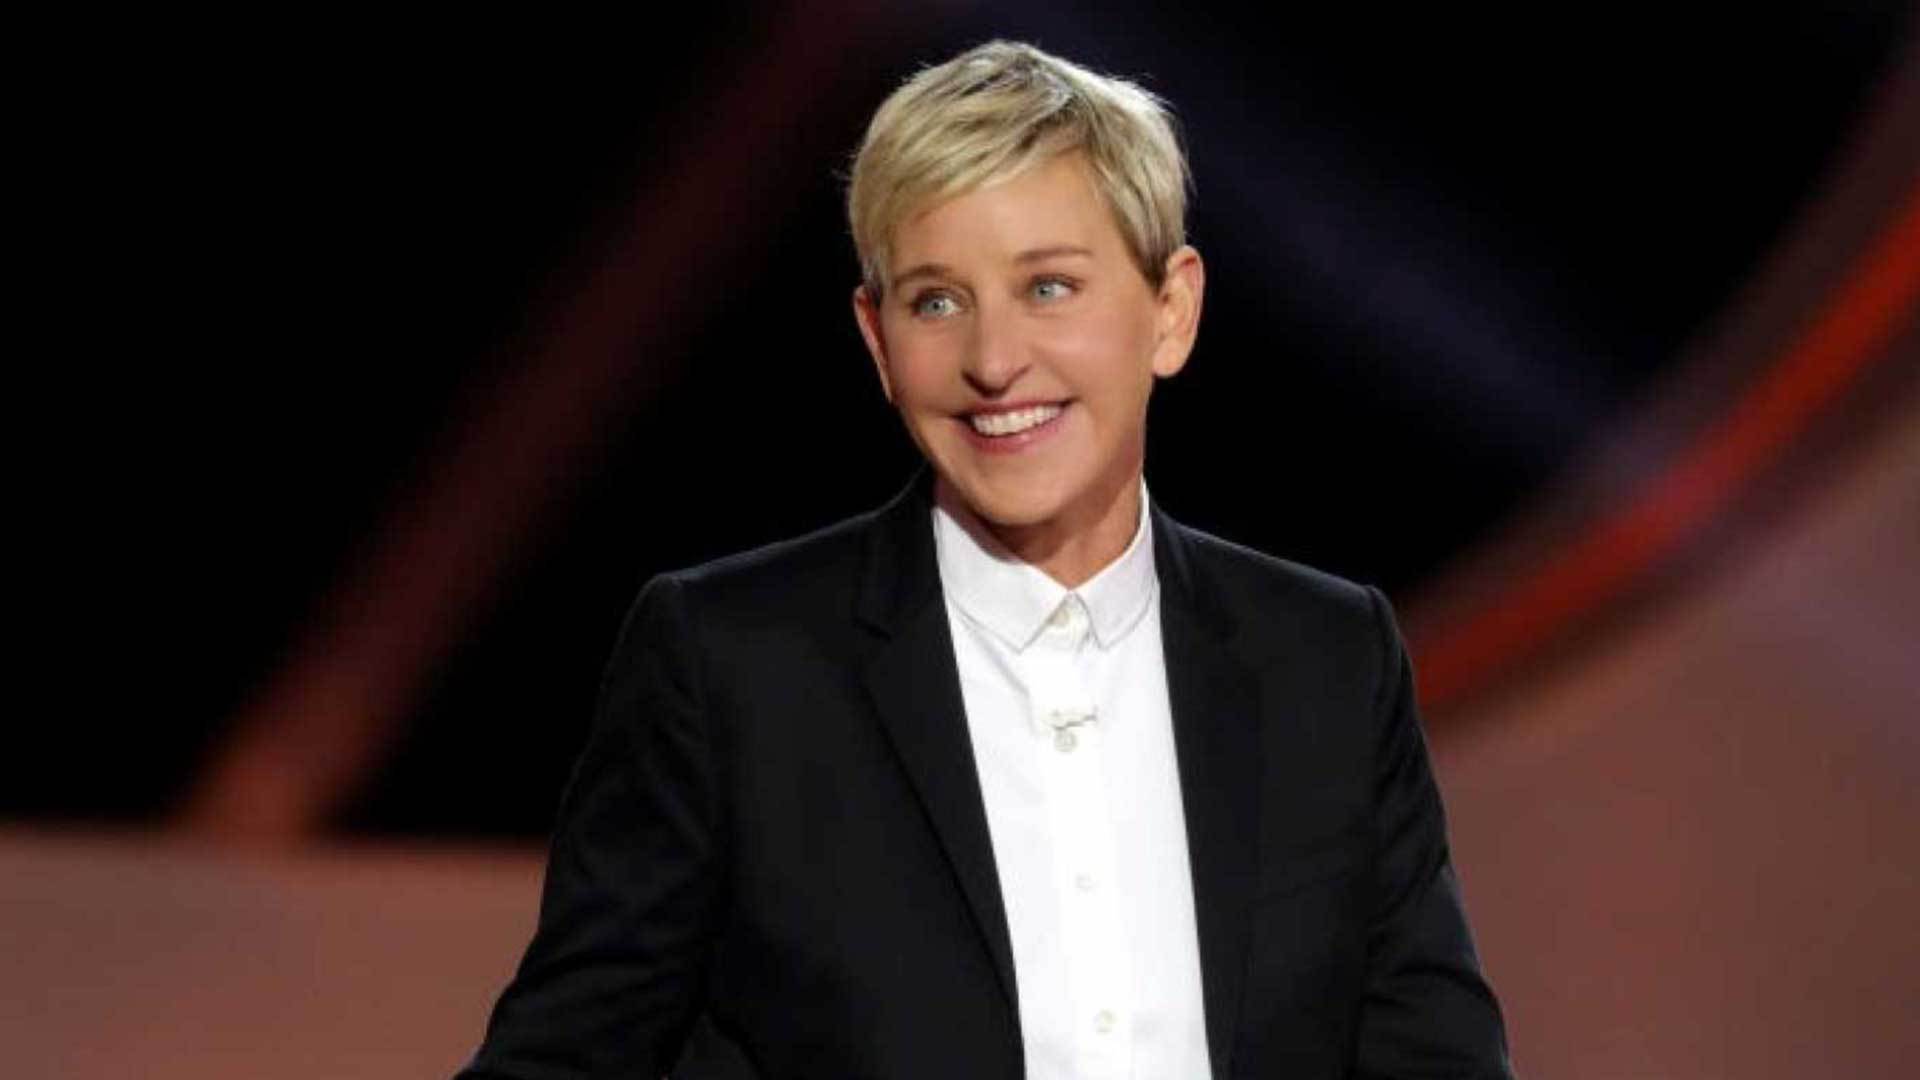 Ellen DeGeneres: Be True To Yourself